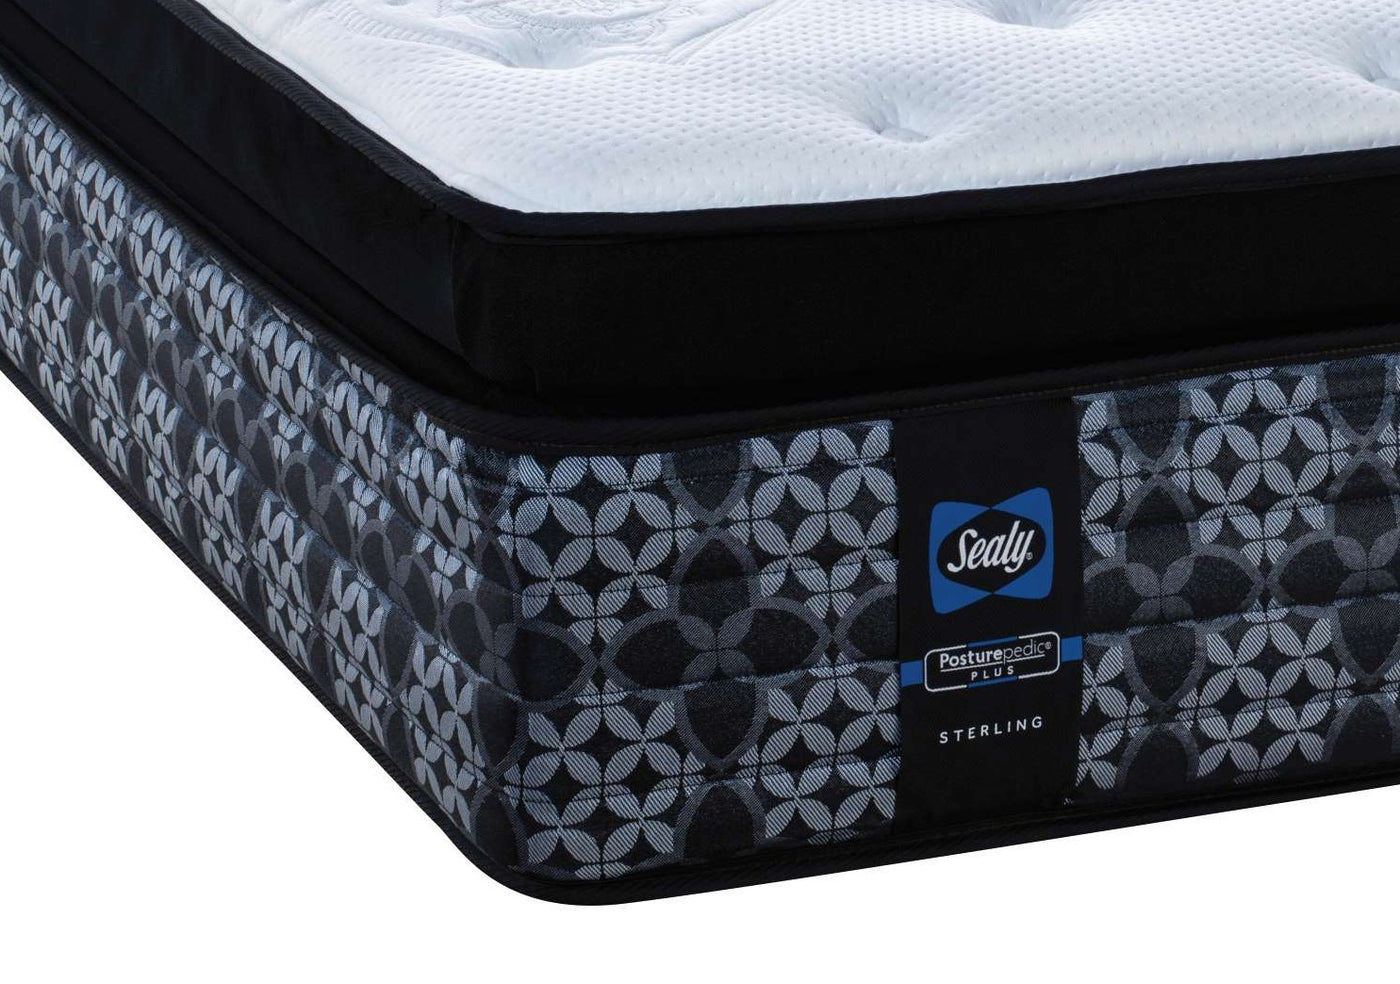 irchmere-plush-euro-pillowtop-queen-mattress